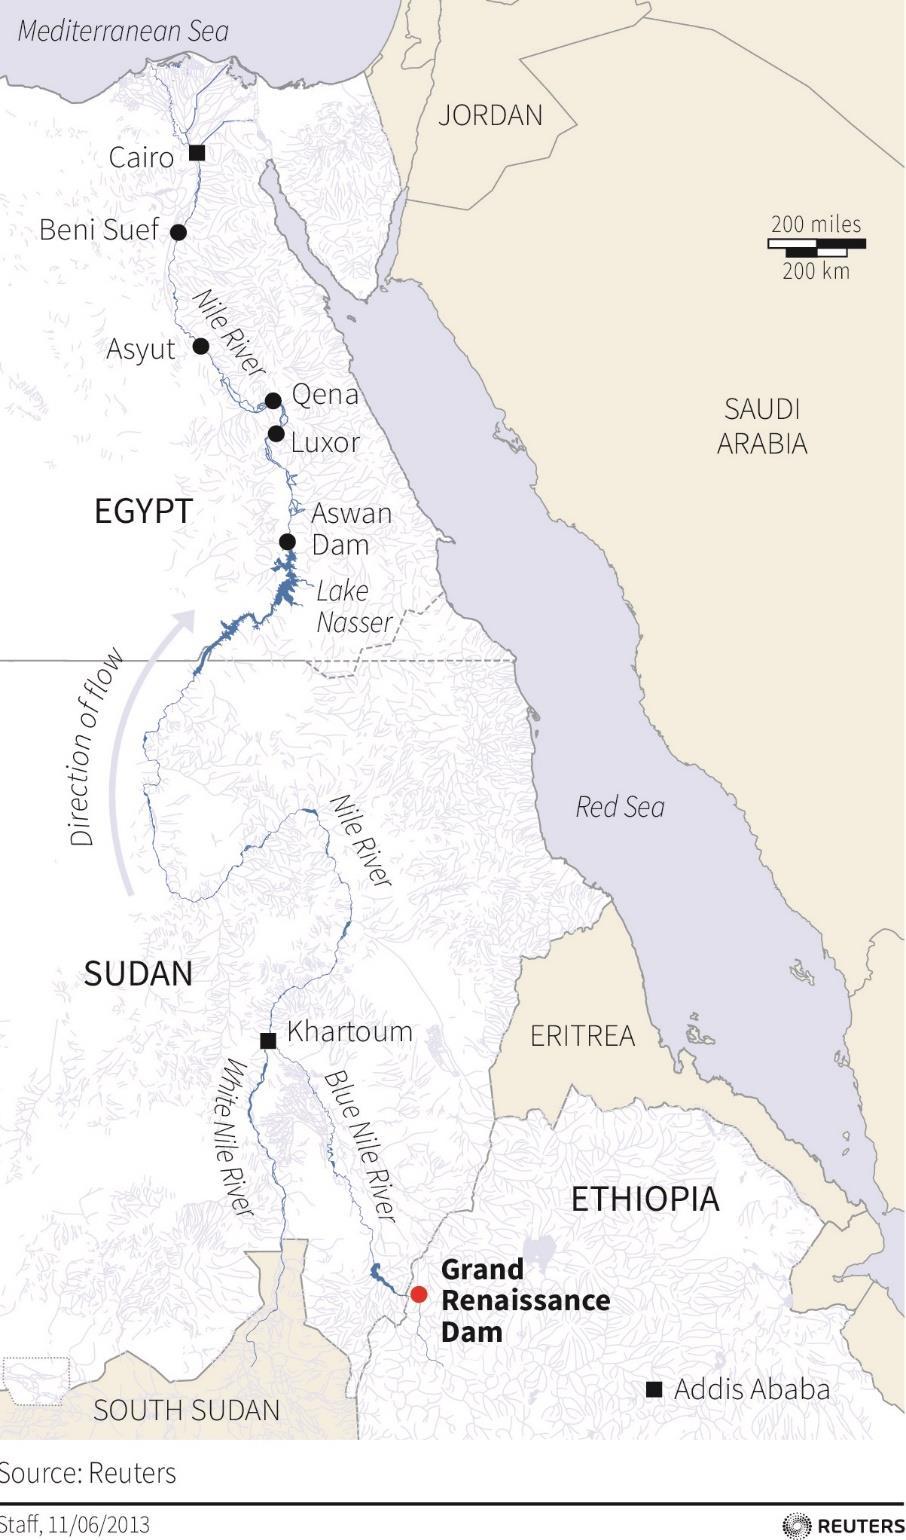 ㅇ수력 < 나일강유역수자원분포도 ( 이집트 - 수단 - 에티오피아 )> - 이집트의수력잠재량은약 3664 MW로연간발전량은 15,300 GWh로예측됨 - 2013년기준수력발전은전체발전량중 9% 를차지하여 137억 kwh의전력을생산 -